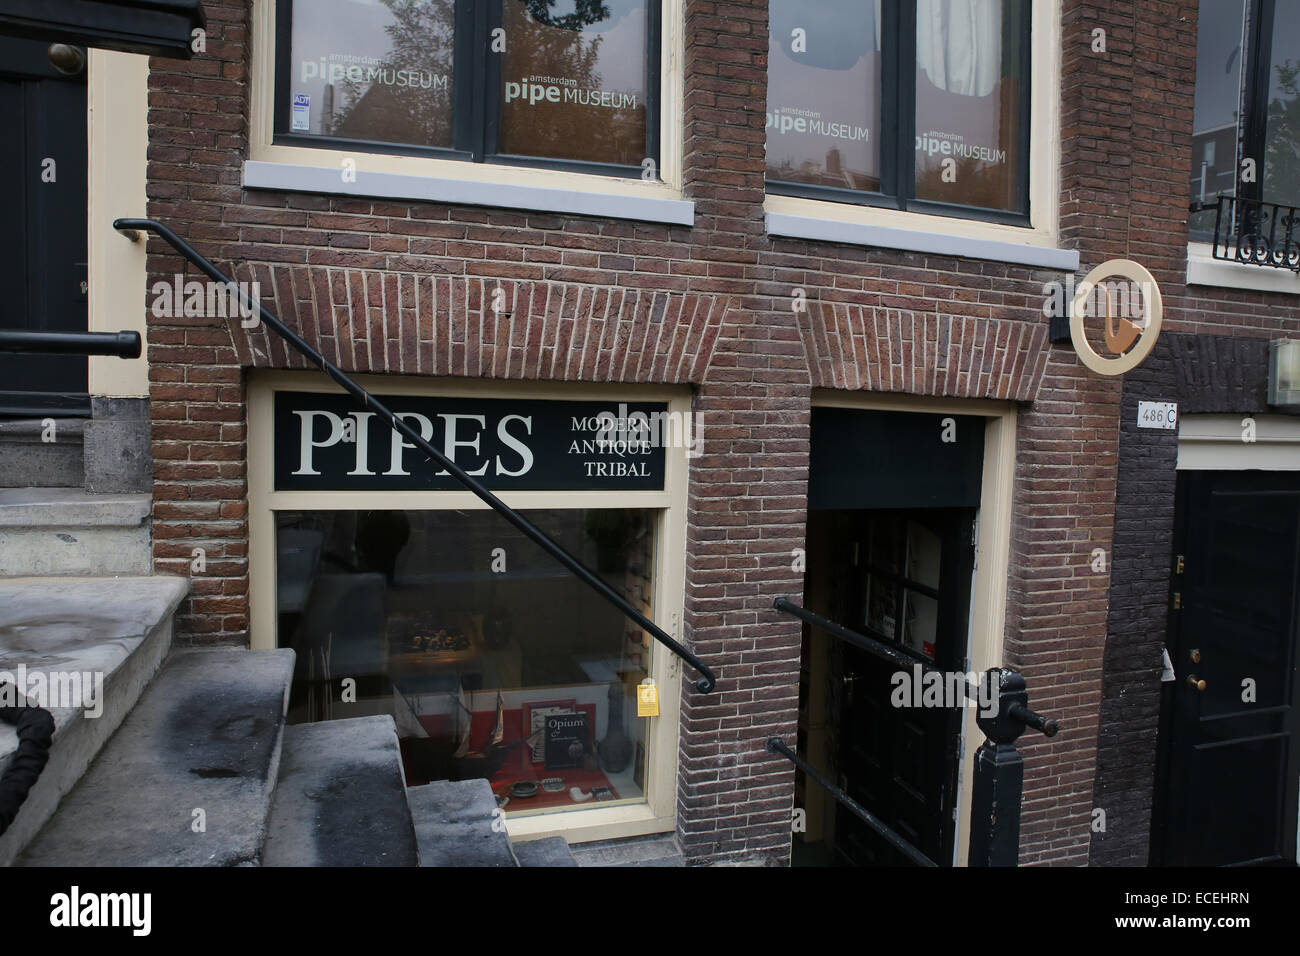 pijpenkabinet smokiana pipe museum amsterdam Stock Photo - Alamy